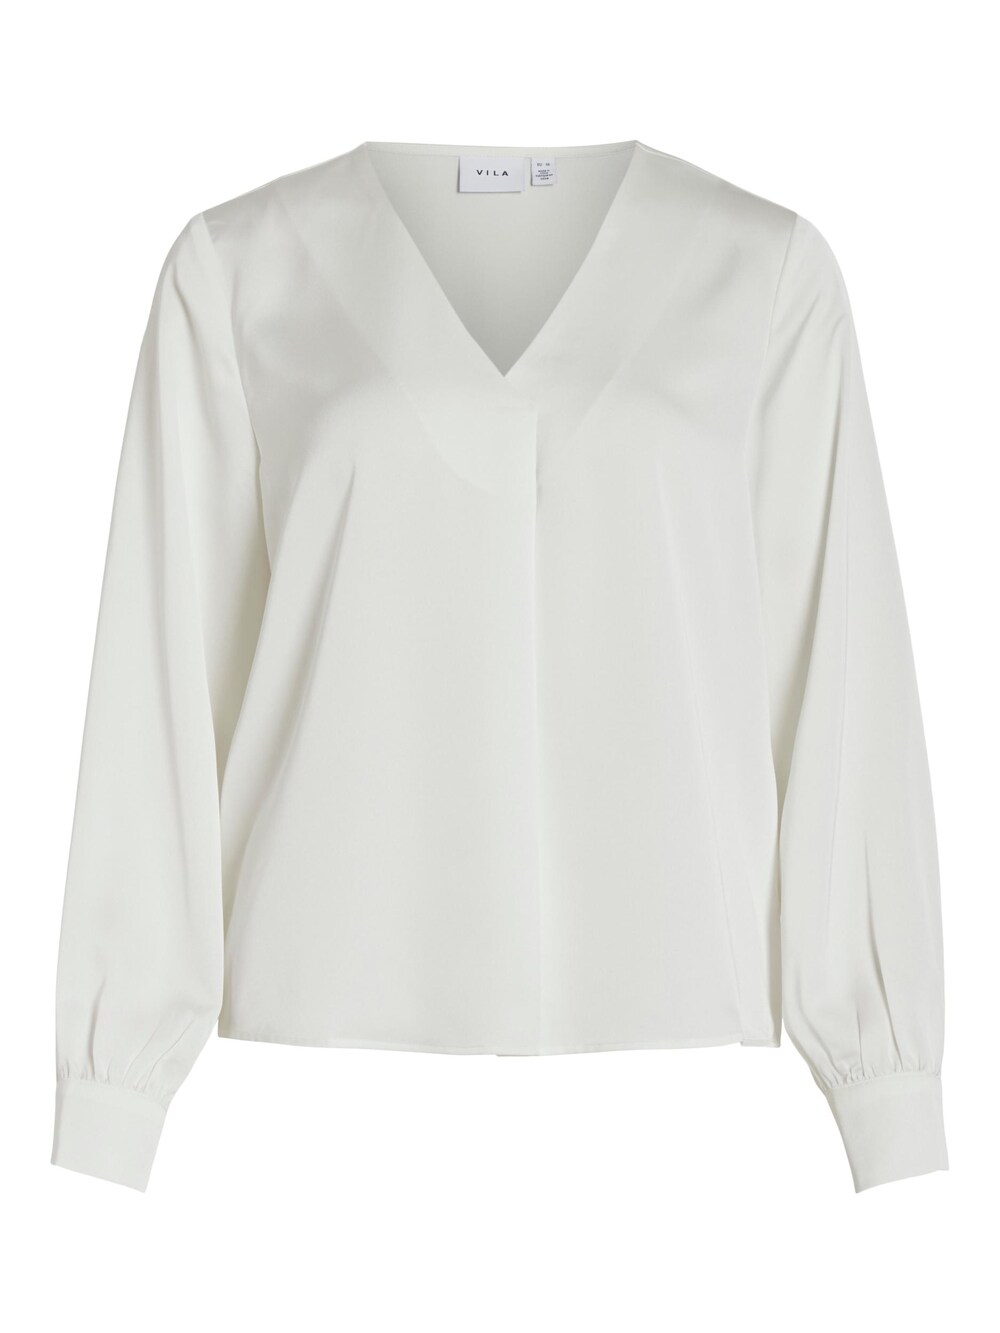 Блузка VILA, белый блузка с кружевом rouge vila белый